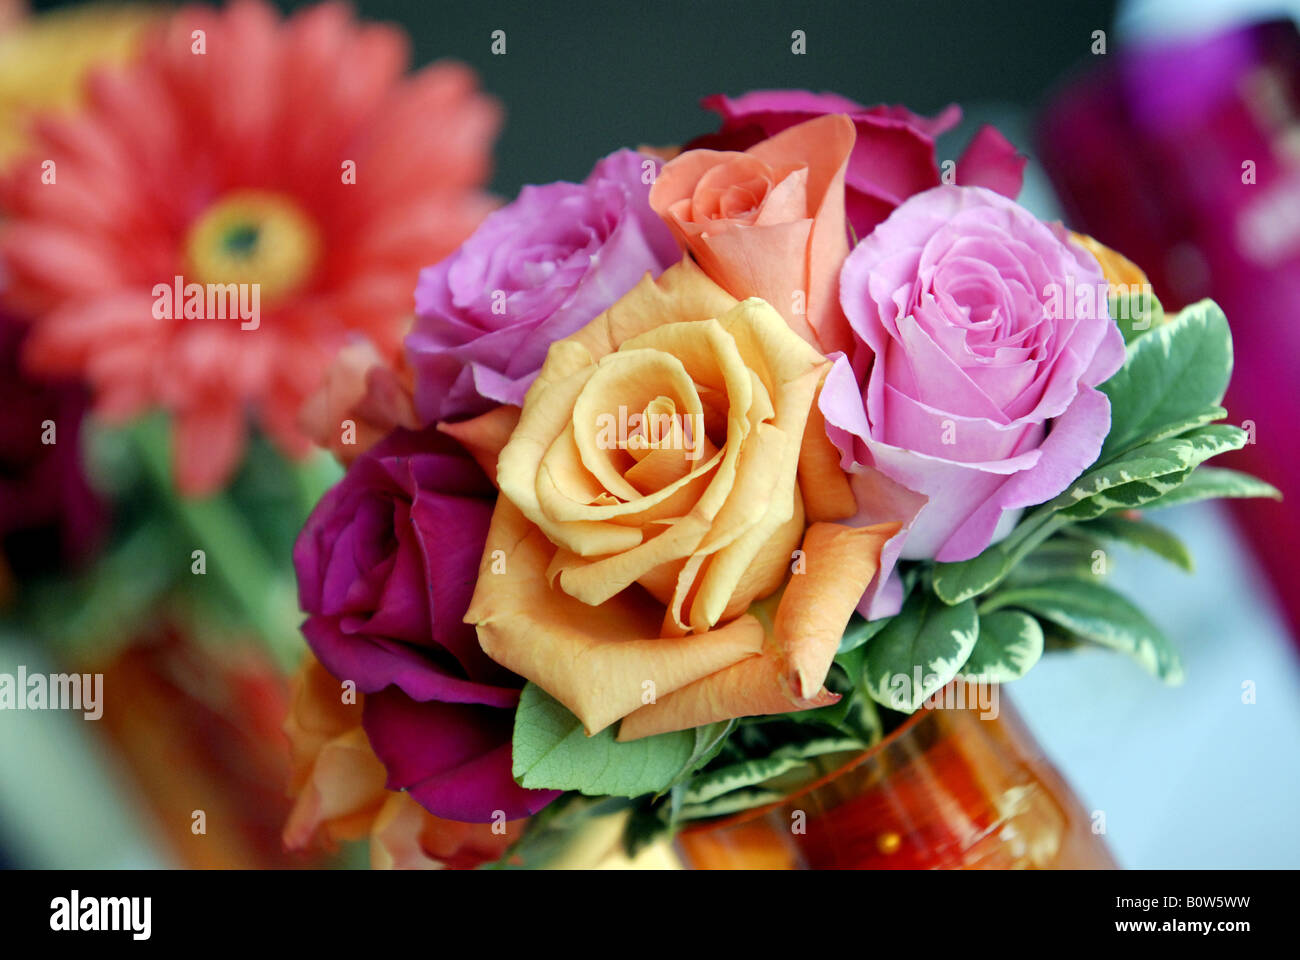 Rosa, Naranja, rojo y violeta rosas utilizadas como flores de la boda Foto de stock